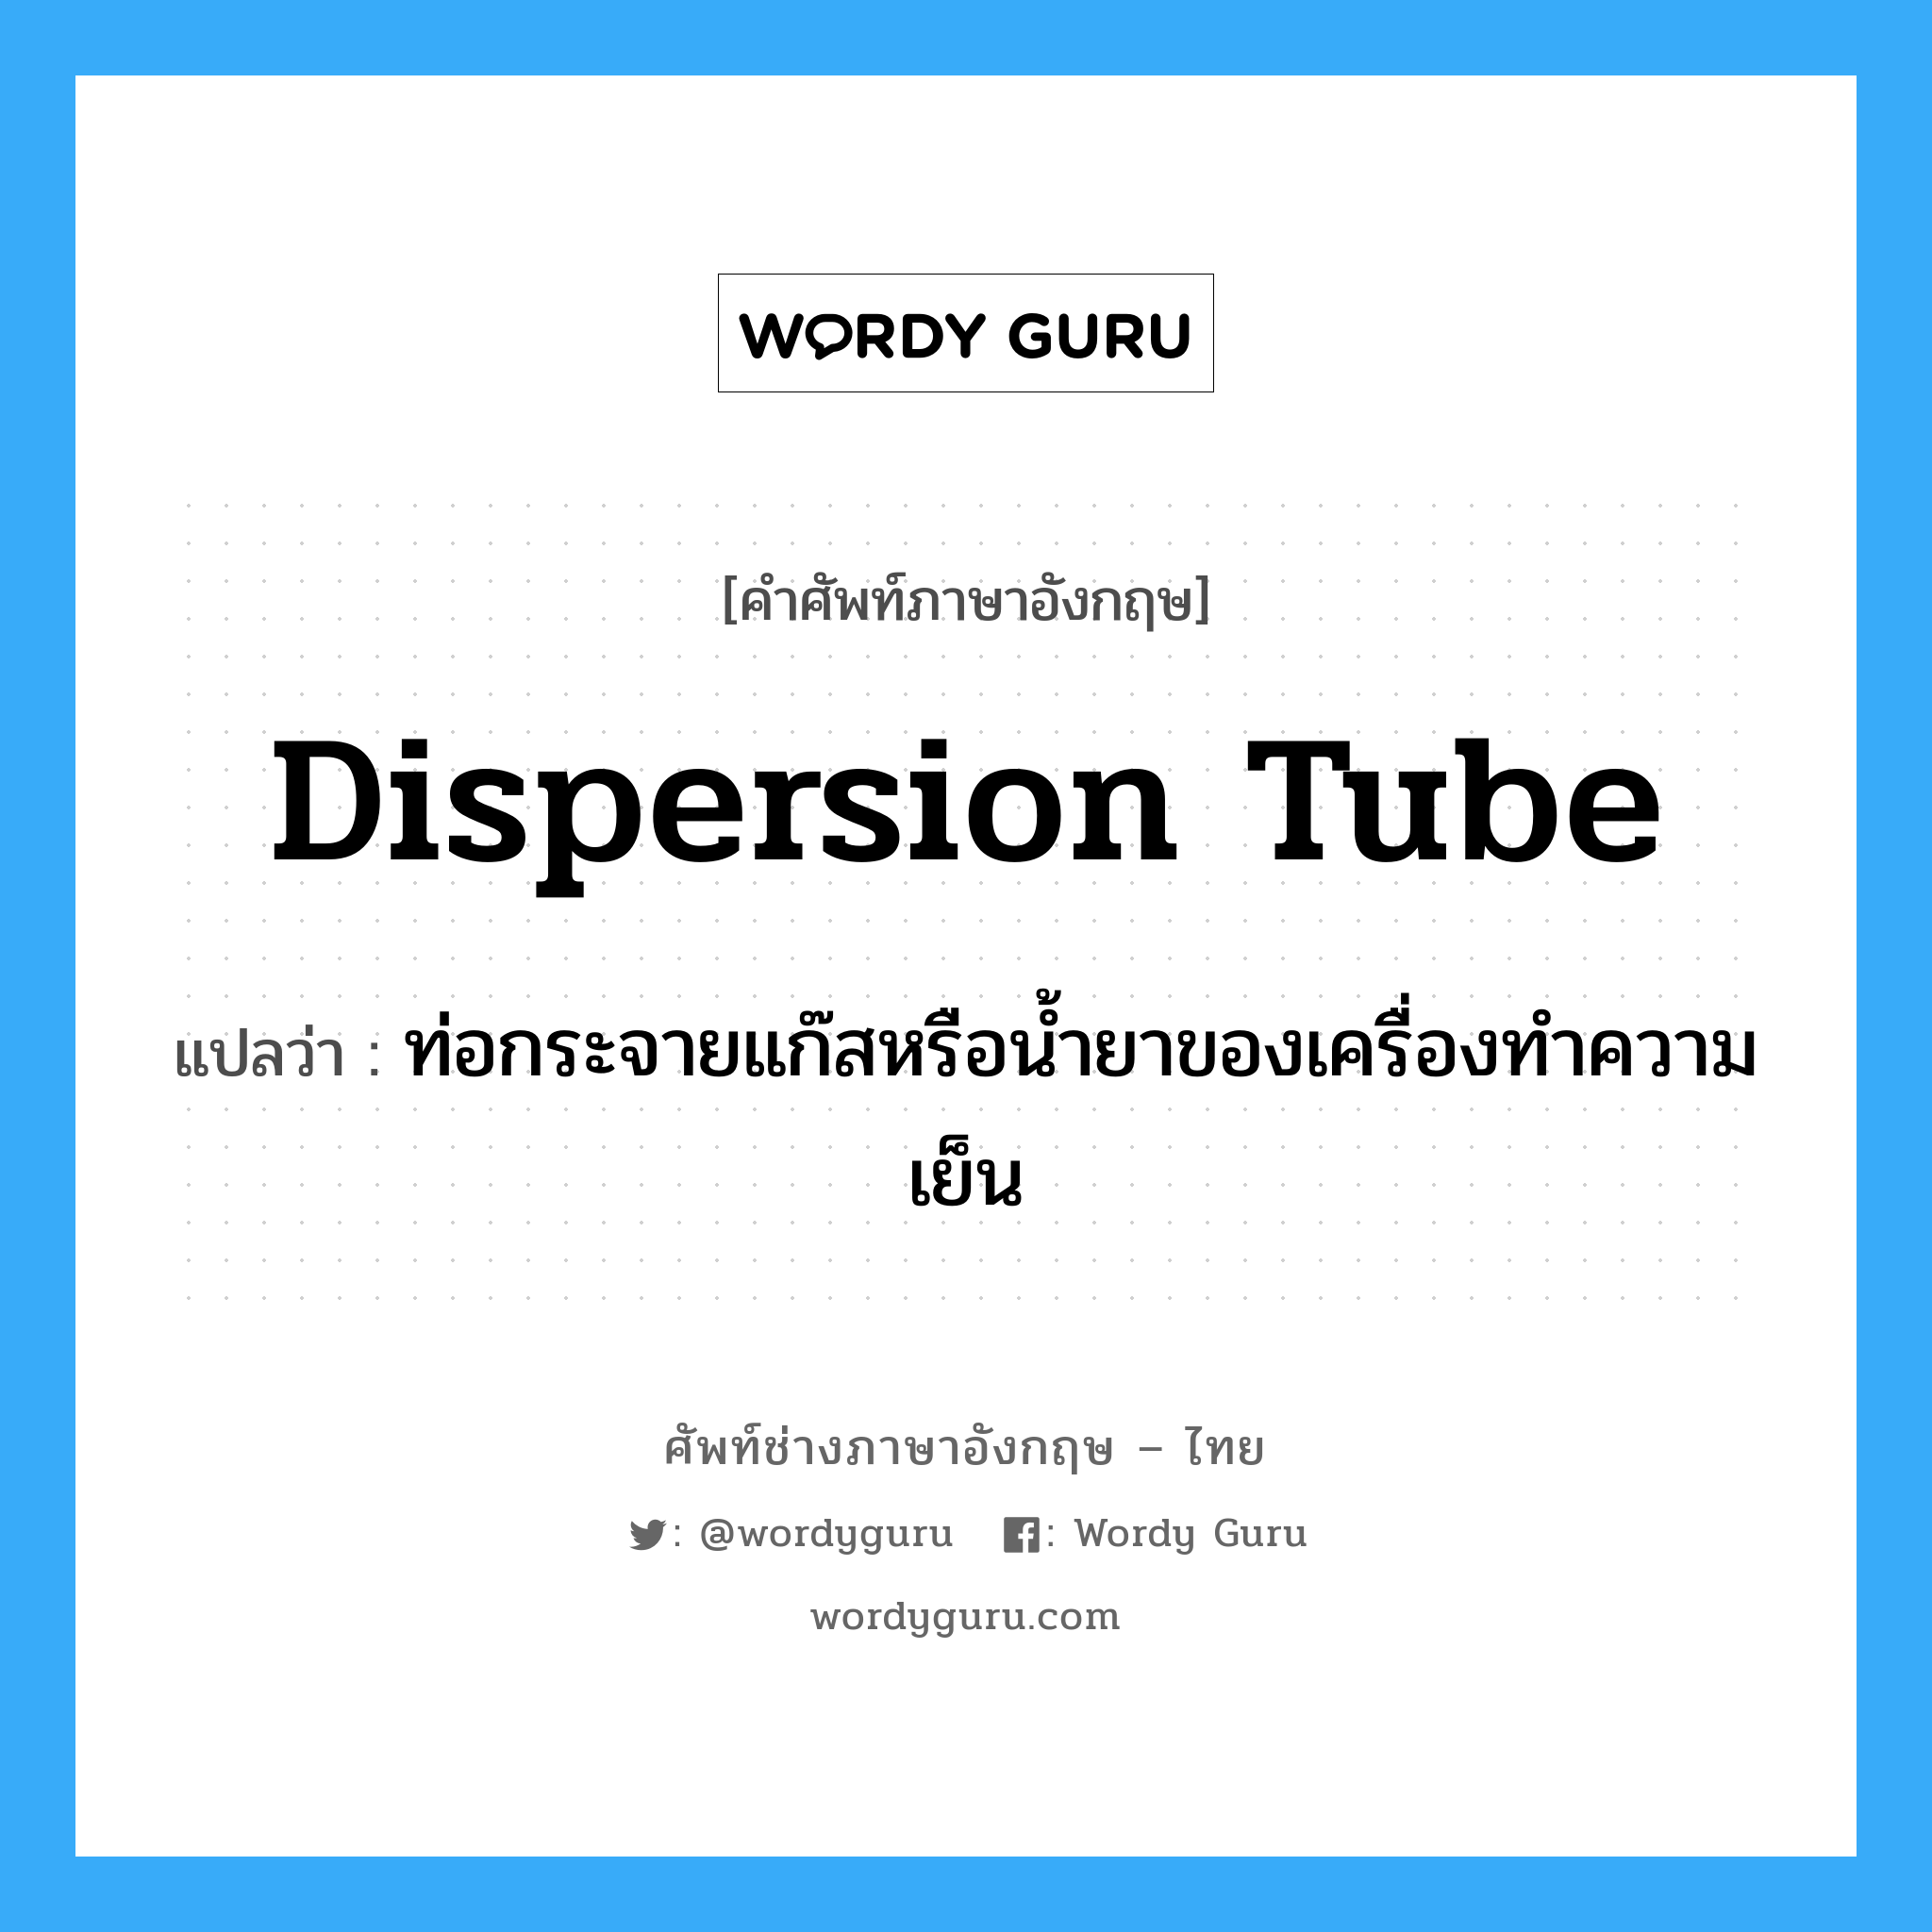 dispersion tube แปลว่า?, คำศัพท์ช่างภาษาอังกฤษ - ไทย dispersion tube คำศัพท์ภาษาอังกฤษ dispersion tube แปลว่า ท่อกระจายแก๊สหรือน้ำยาของเครื่องทำความเย็น